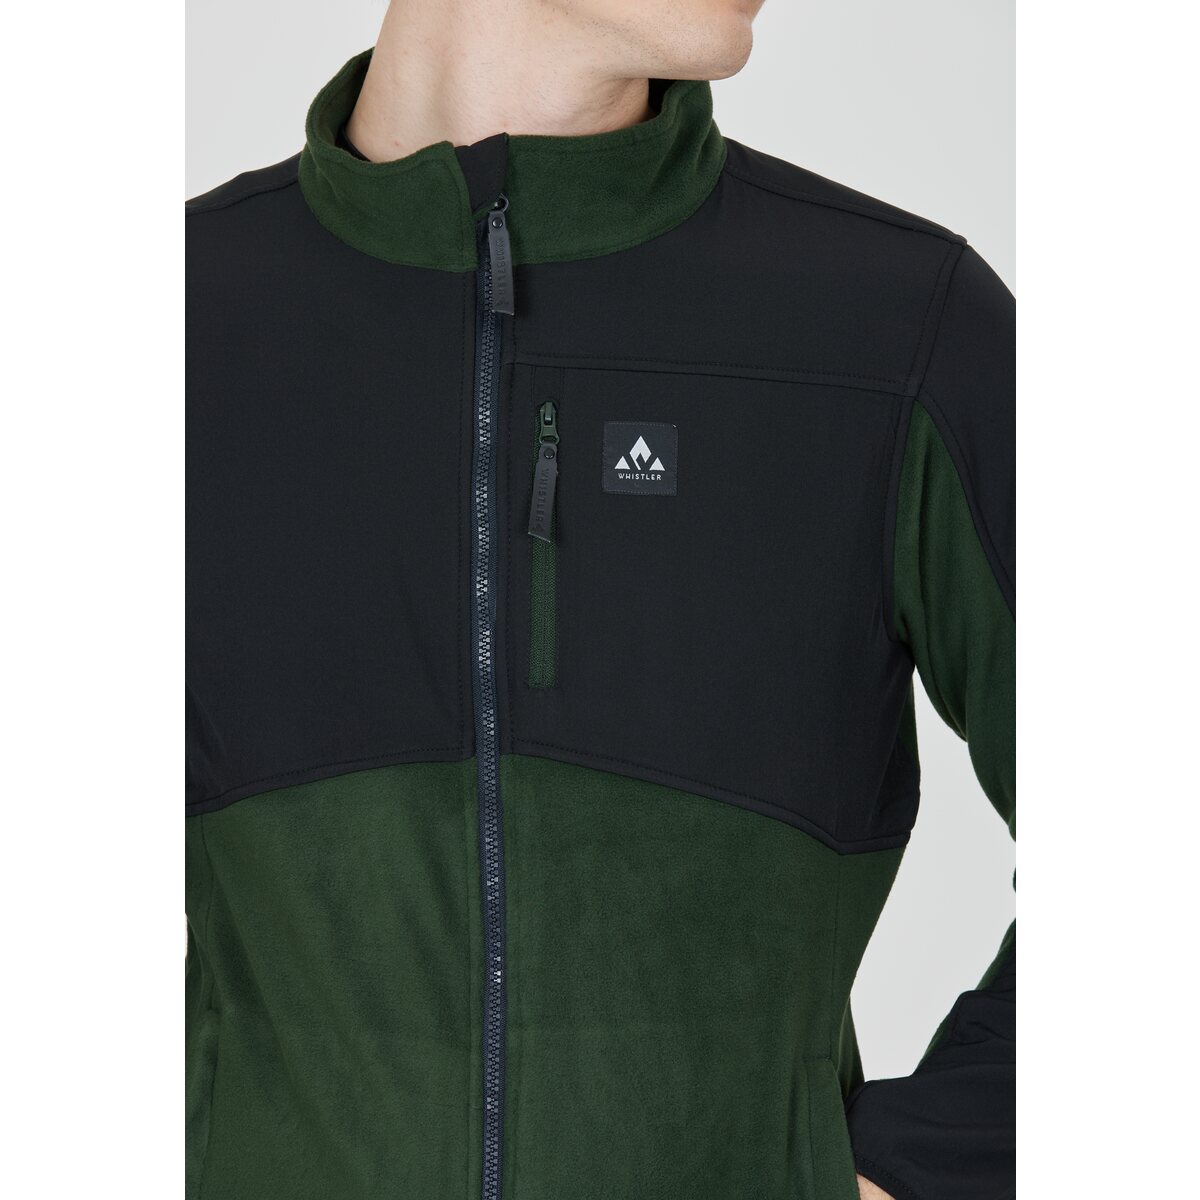 online Jacket WHISTLER Evo kaufen M Fleece